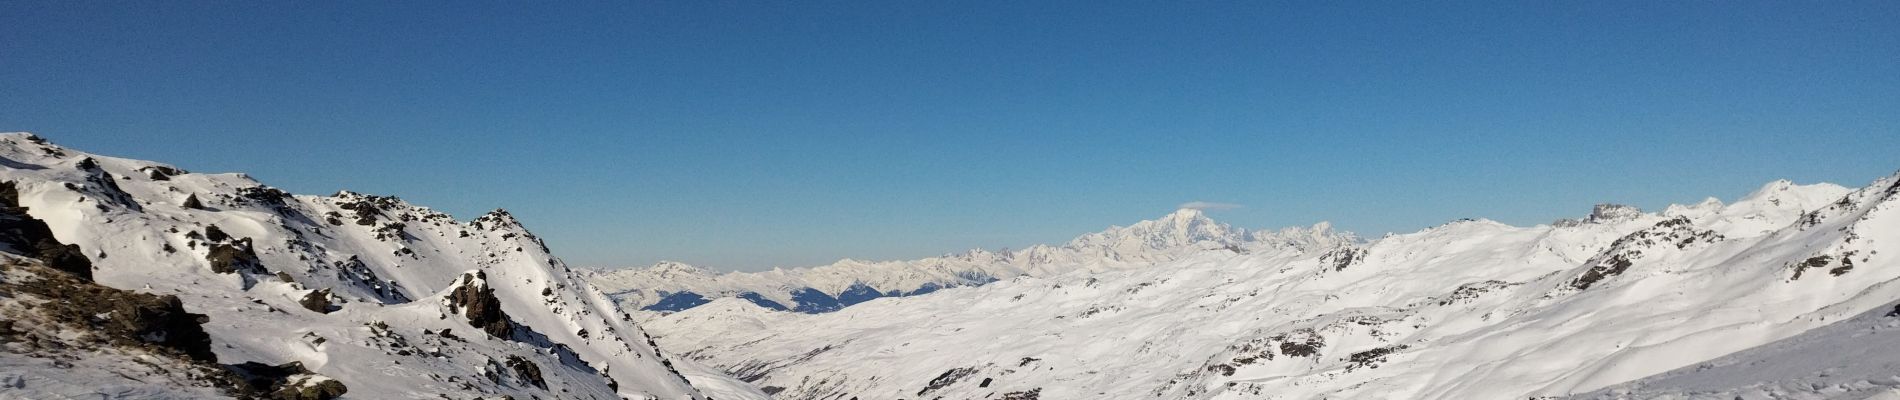 Randonnée Ski de randonnée Saint-Michel-de-Maurienne - Col de la vallée étroite  - Photo